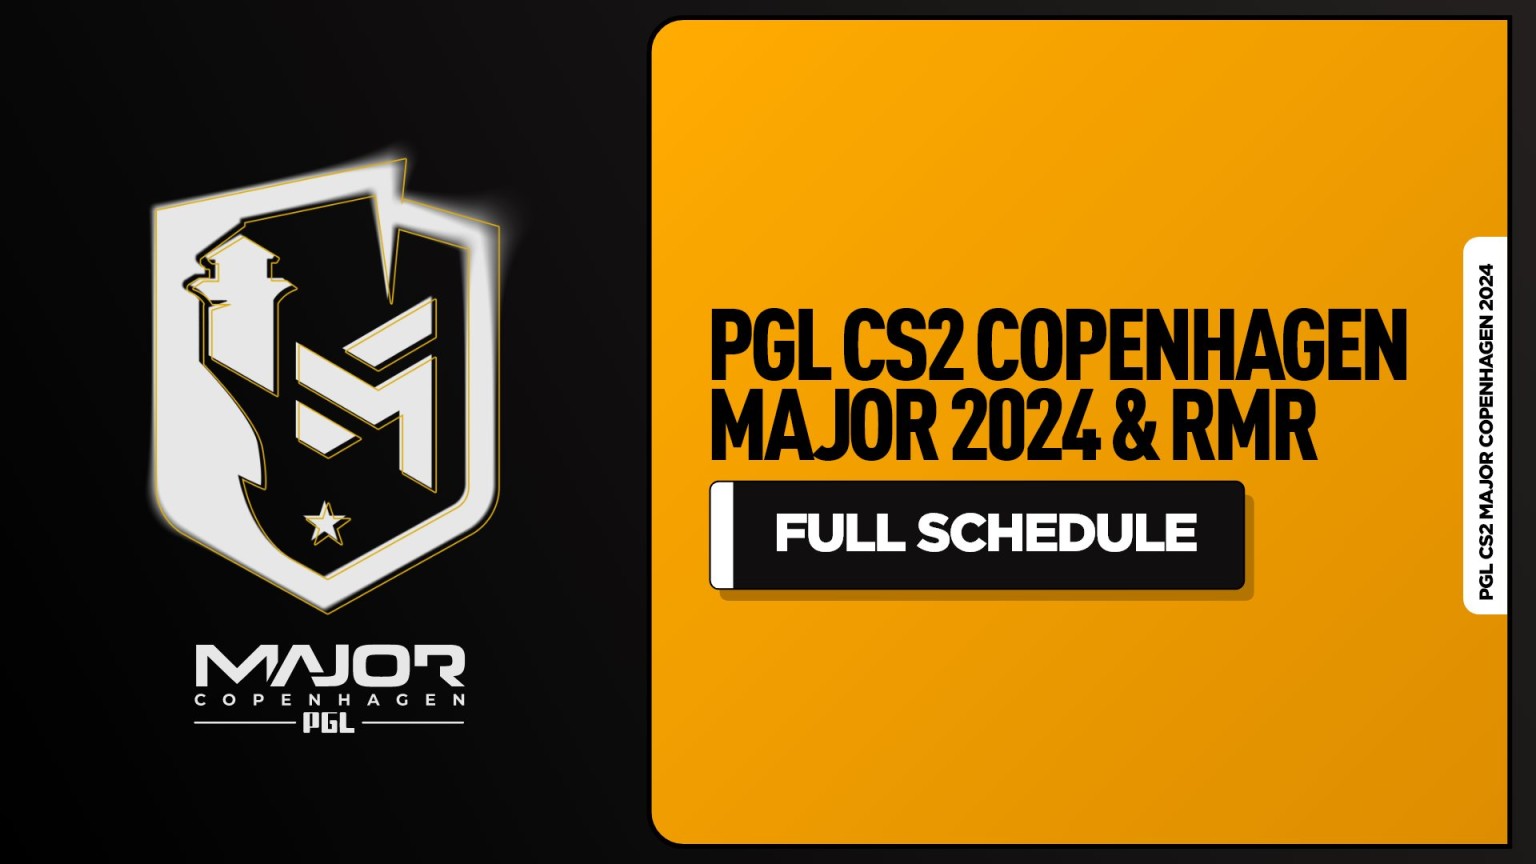 PGL revela calendário para o Cs 2 Copenhagen Major 2024